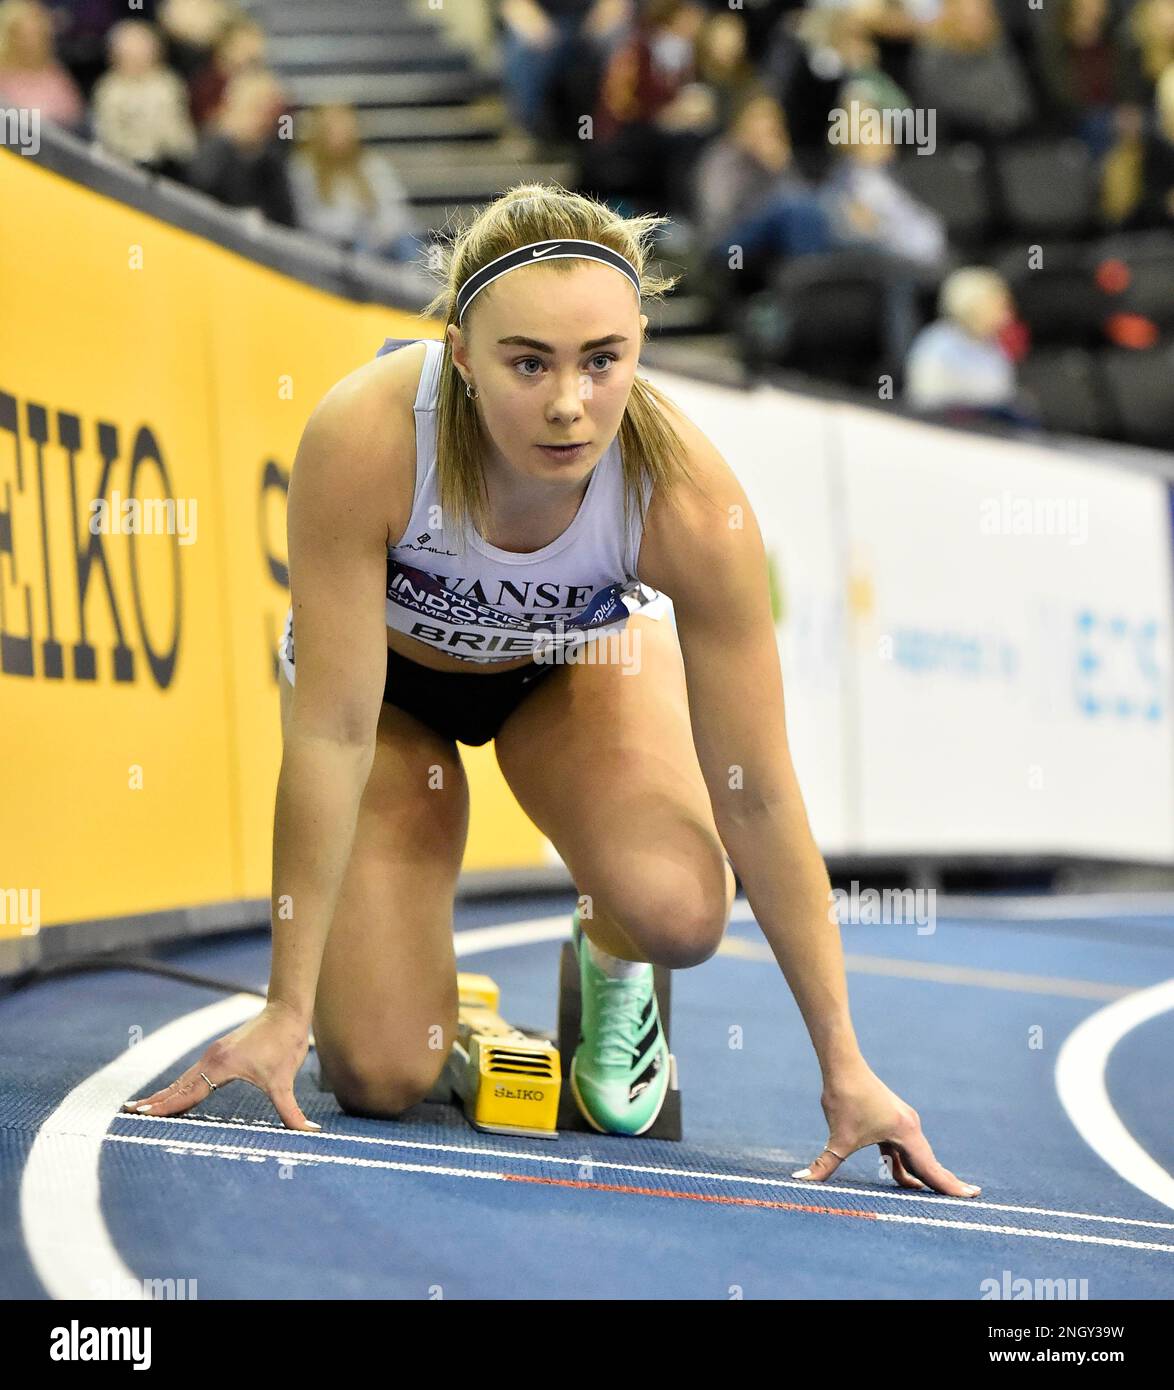 BIRMINGHAM, ANGLETERRE - 19 FÉVRIER : Hannah Brier au cours du 2 e jour des championnats d'athlétisme en salle du Royaume-Uni à l'Utilita Arena, Birmingham, Angleterre Banque D'Images